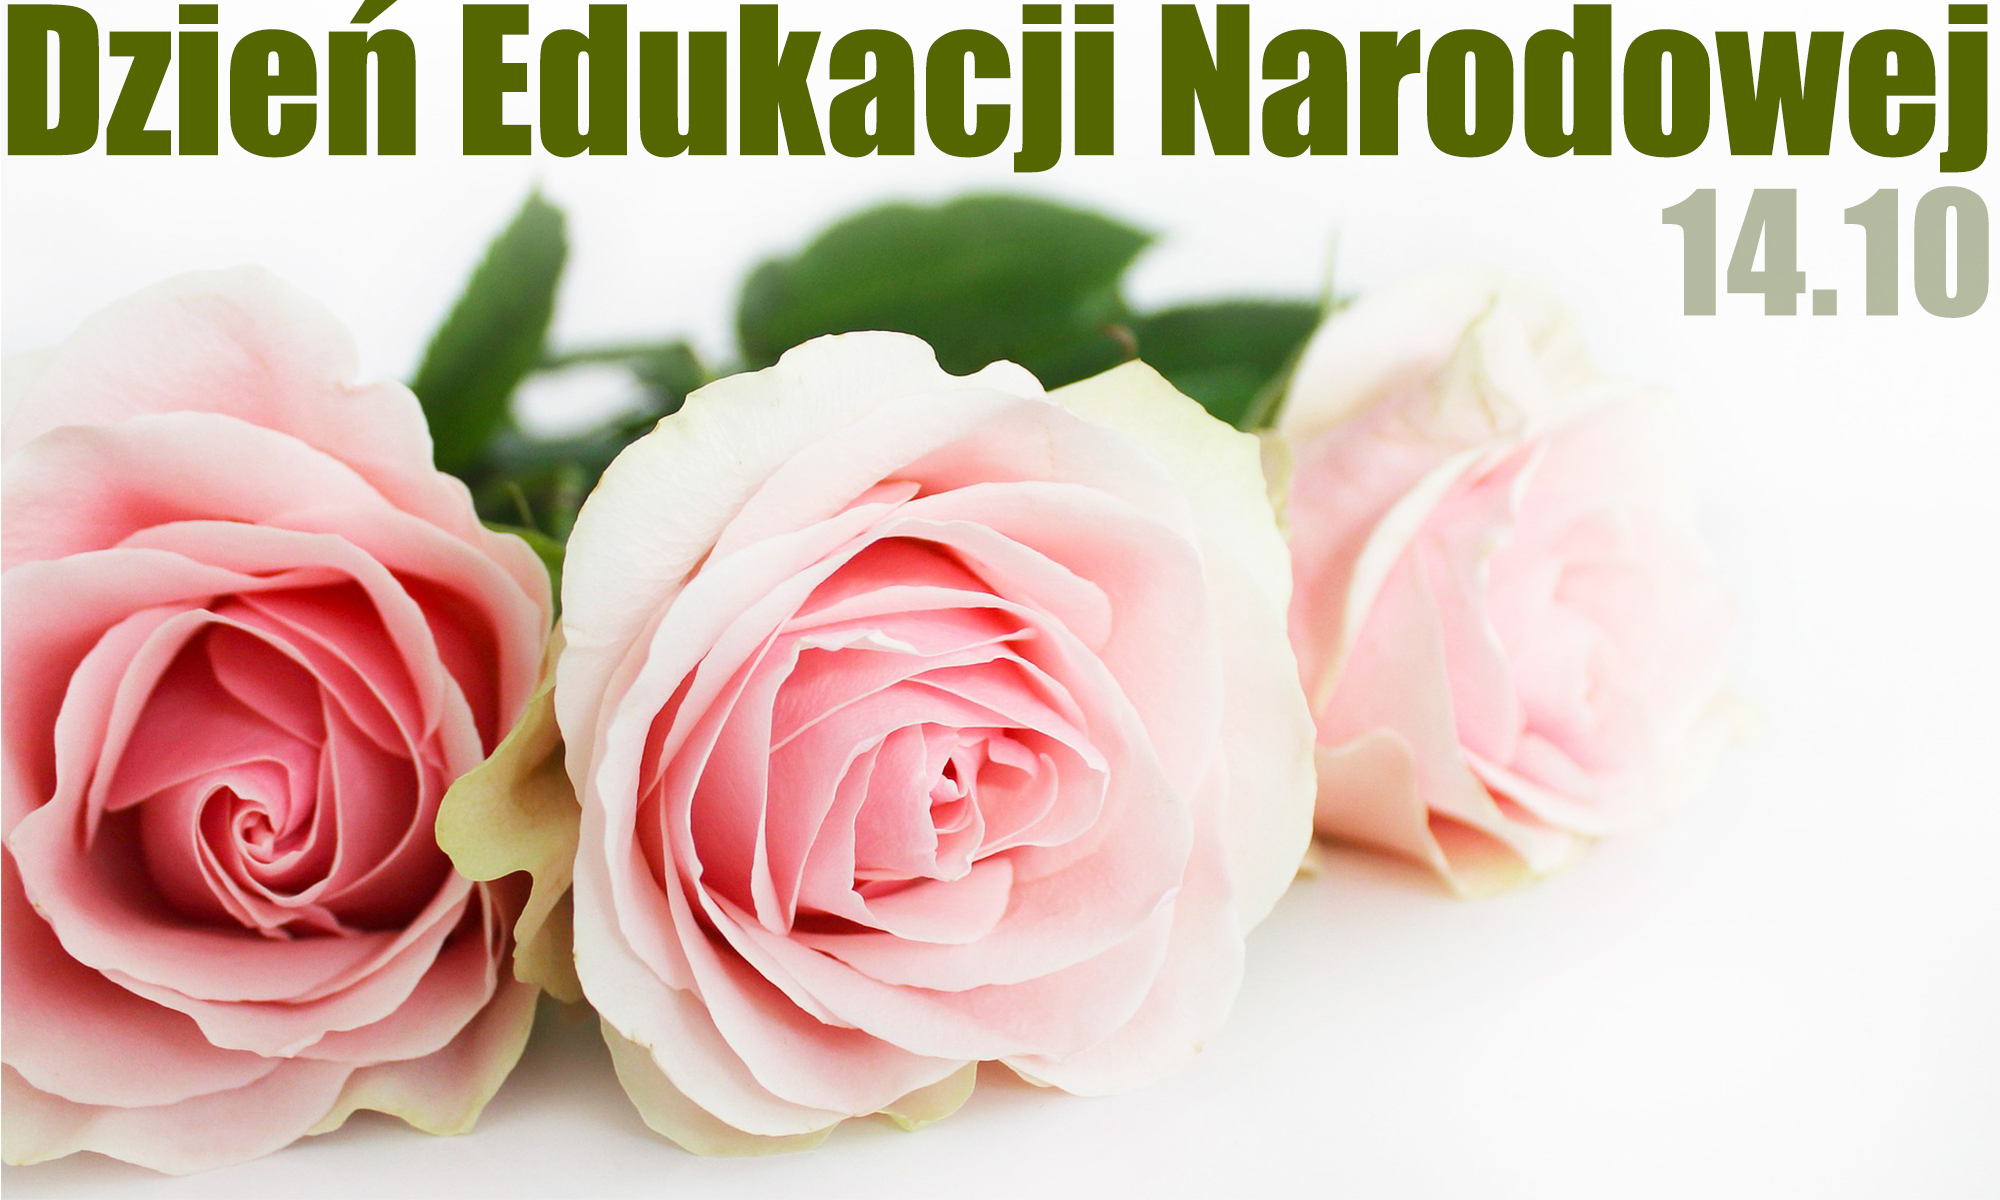 Bukiet jasnoróżowych róż, nad nim napis - Dzień Edukacji Narodowej 14.10. 